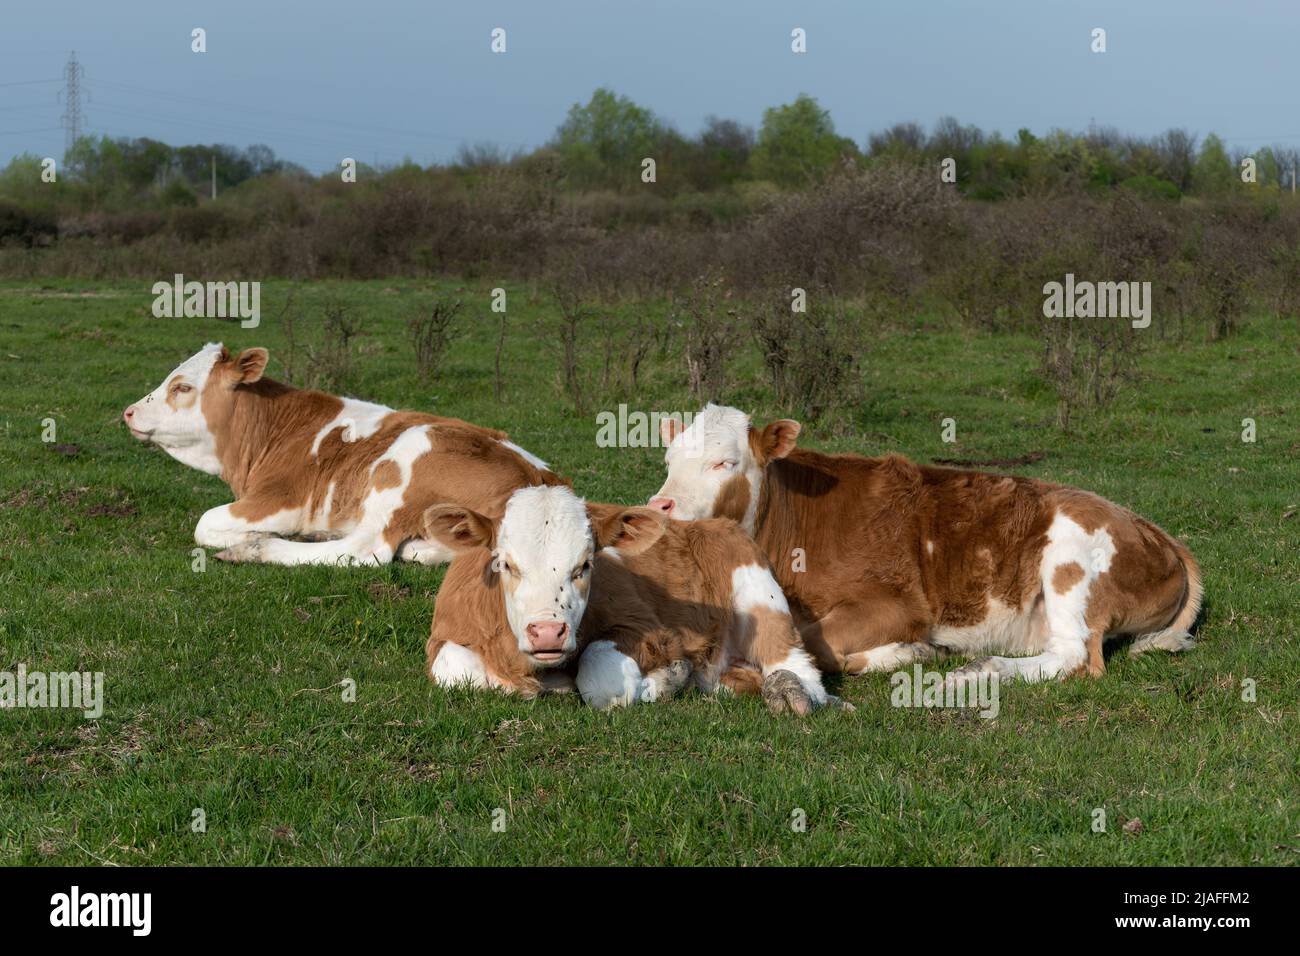 Kälber, die in der Nähe auf dem Feld ruhen, Jungtiere mit orangefarbenen und weißen Haaren, die sich an sonnigen Tagen auf der Weide auf Gras niederlegen Stockfoto